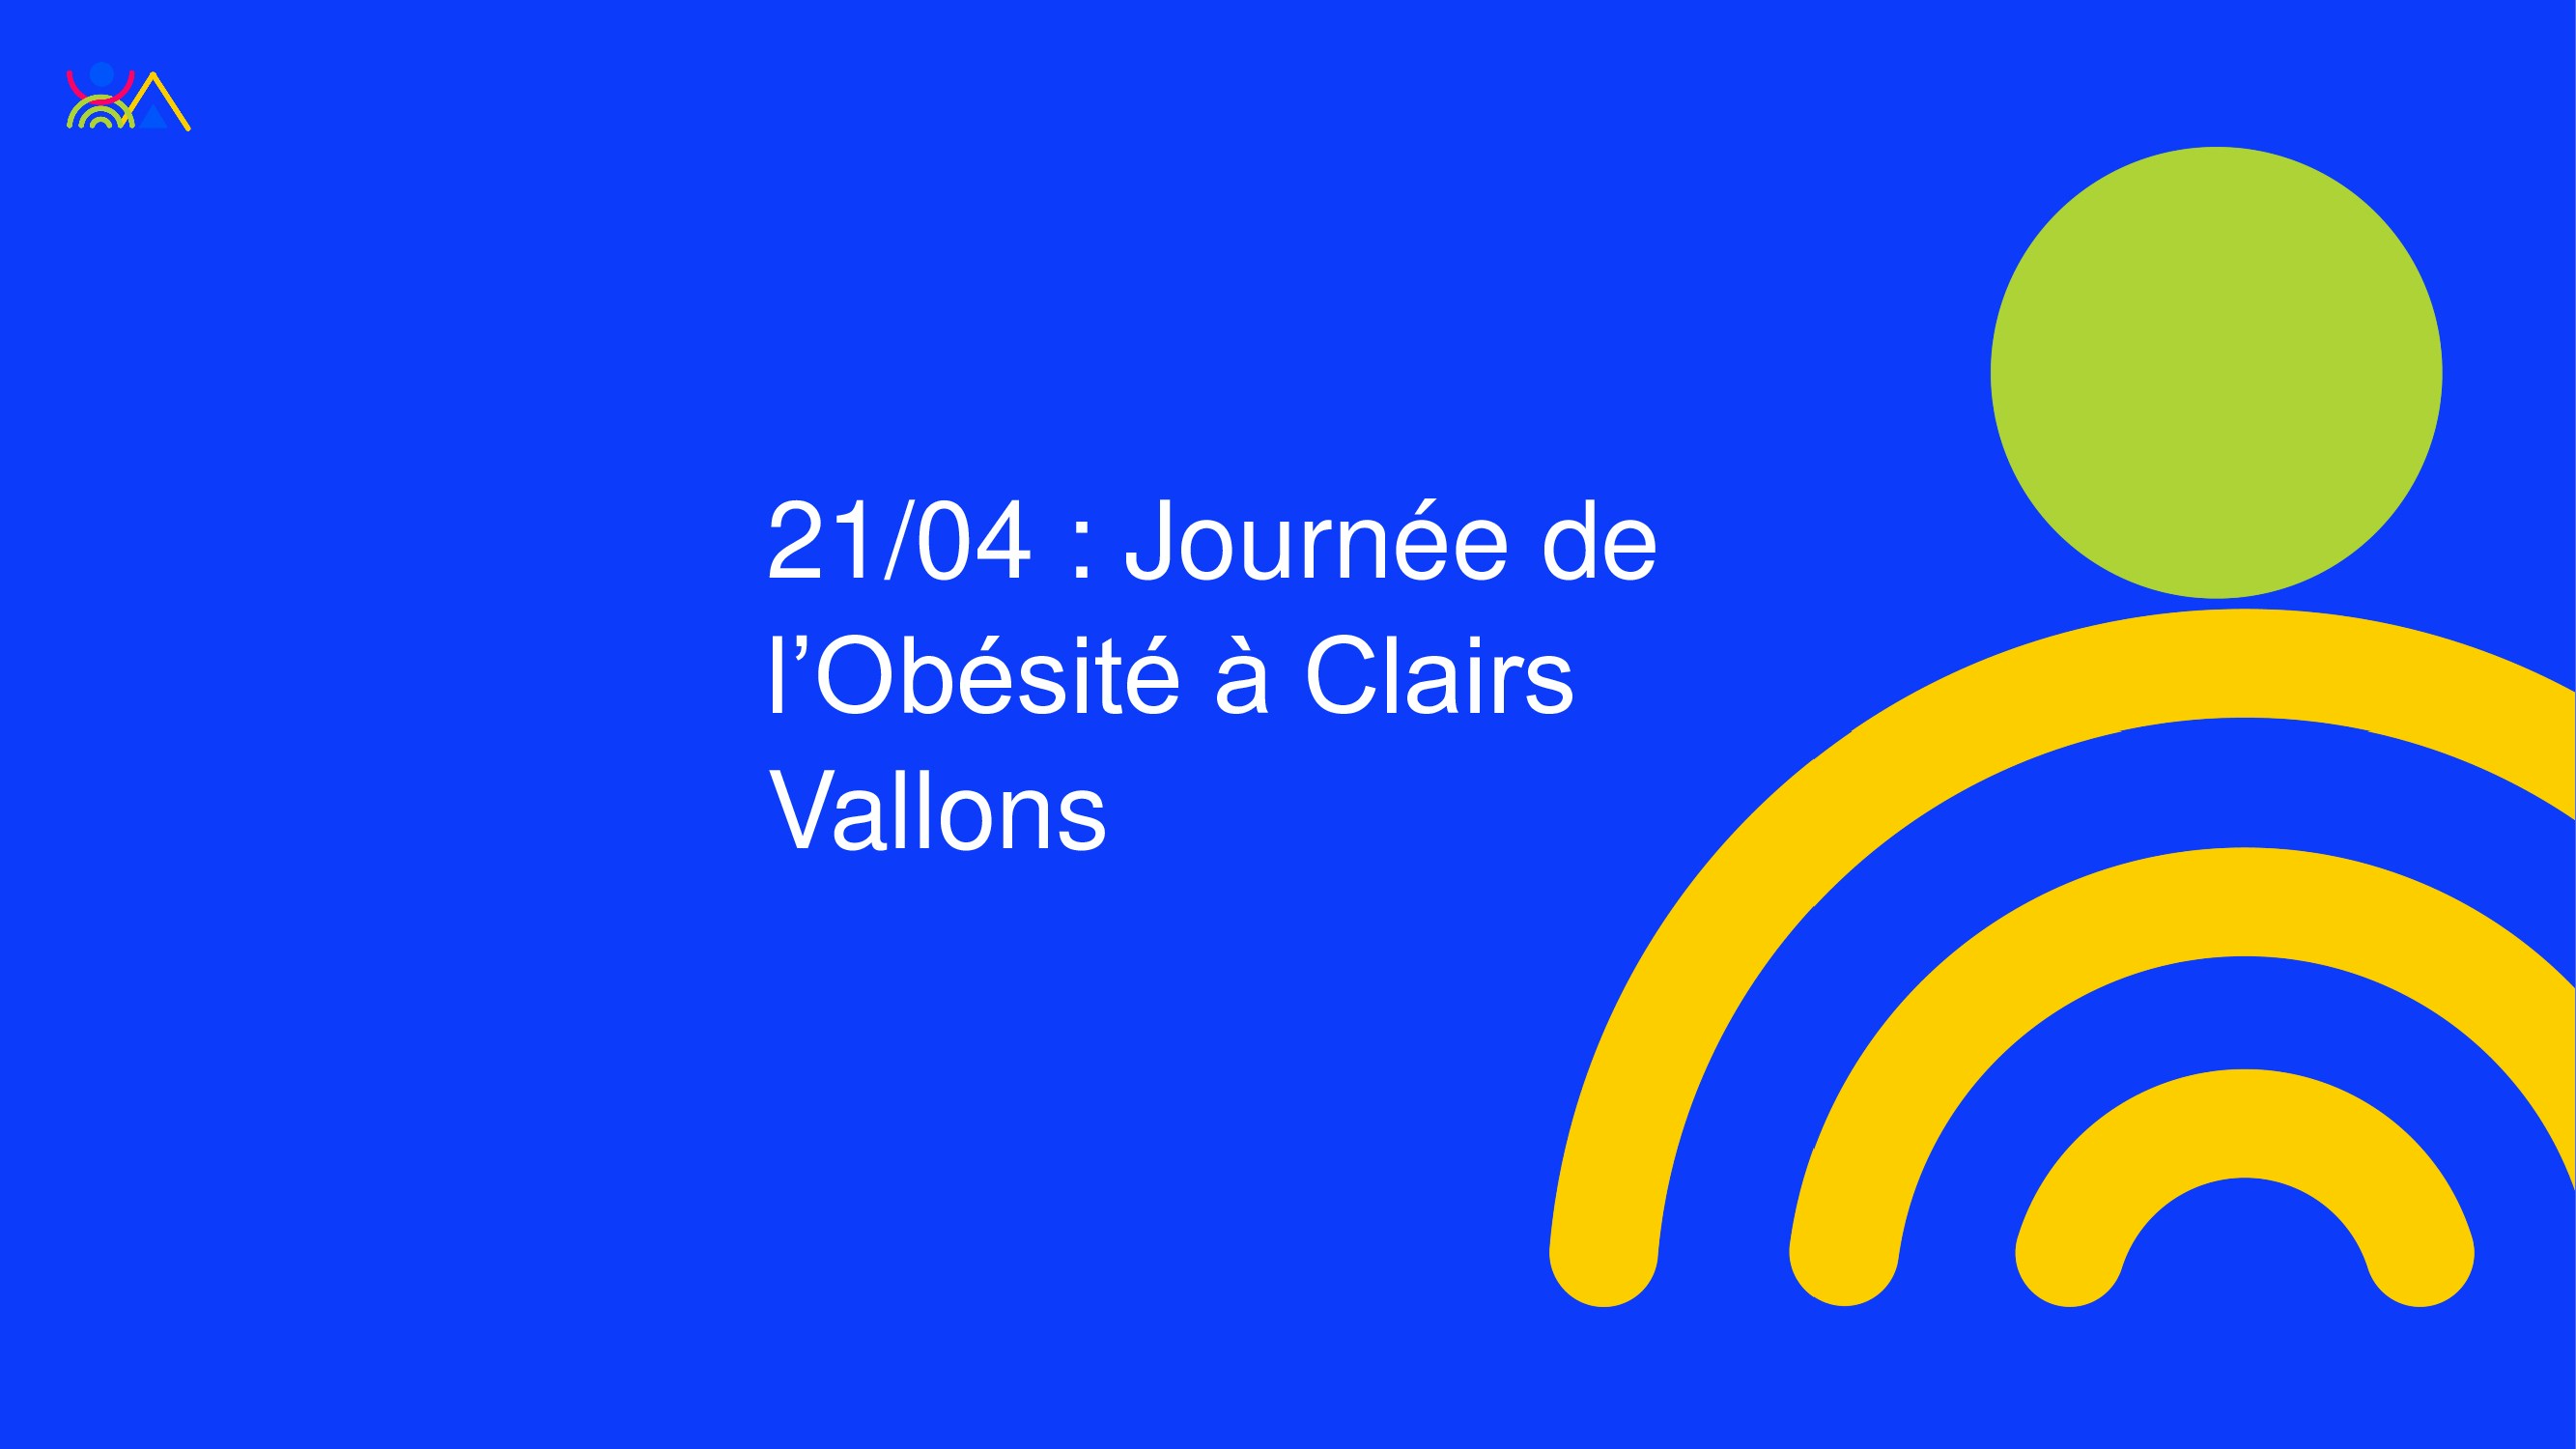 21/04 : Journée de l'Obésité à Clairs Vallons